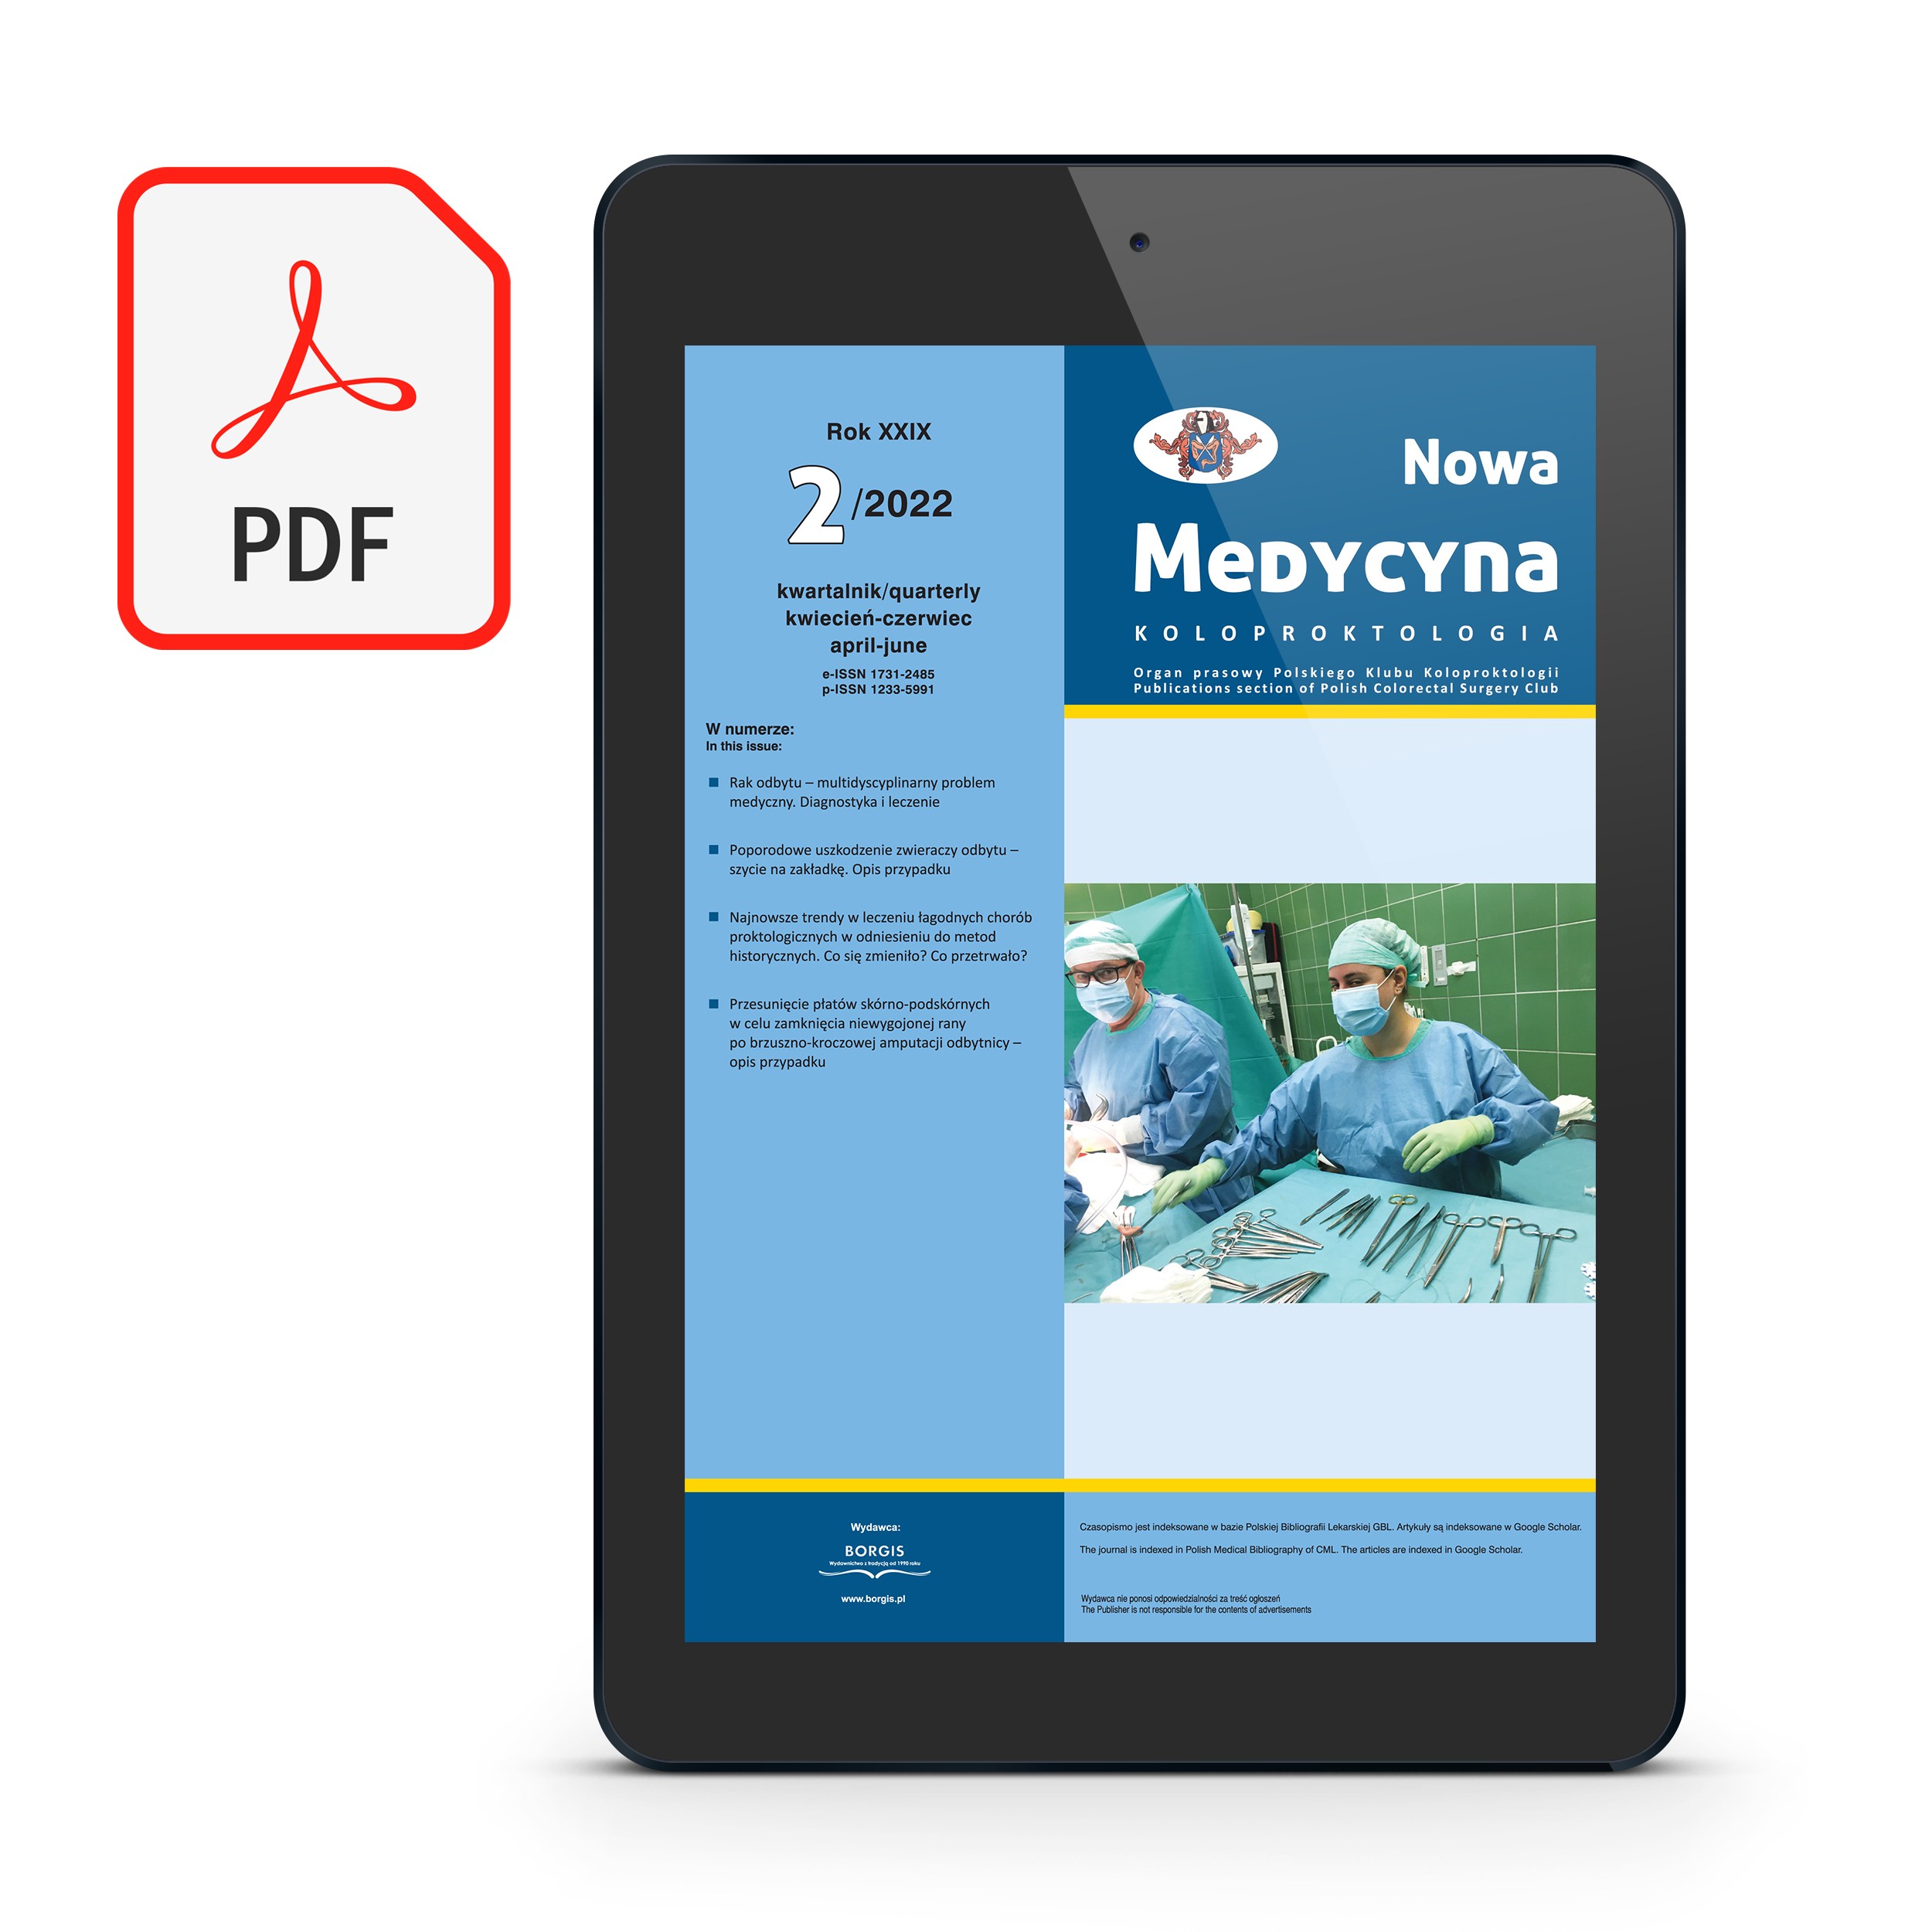 [PDF] Nowa Medycyna 2022/2 – Koloproktologia